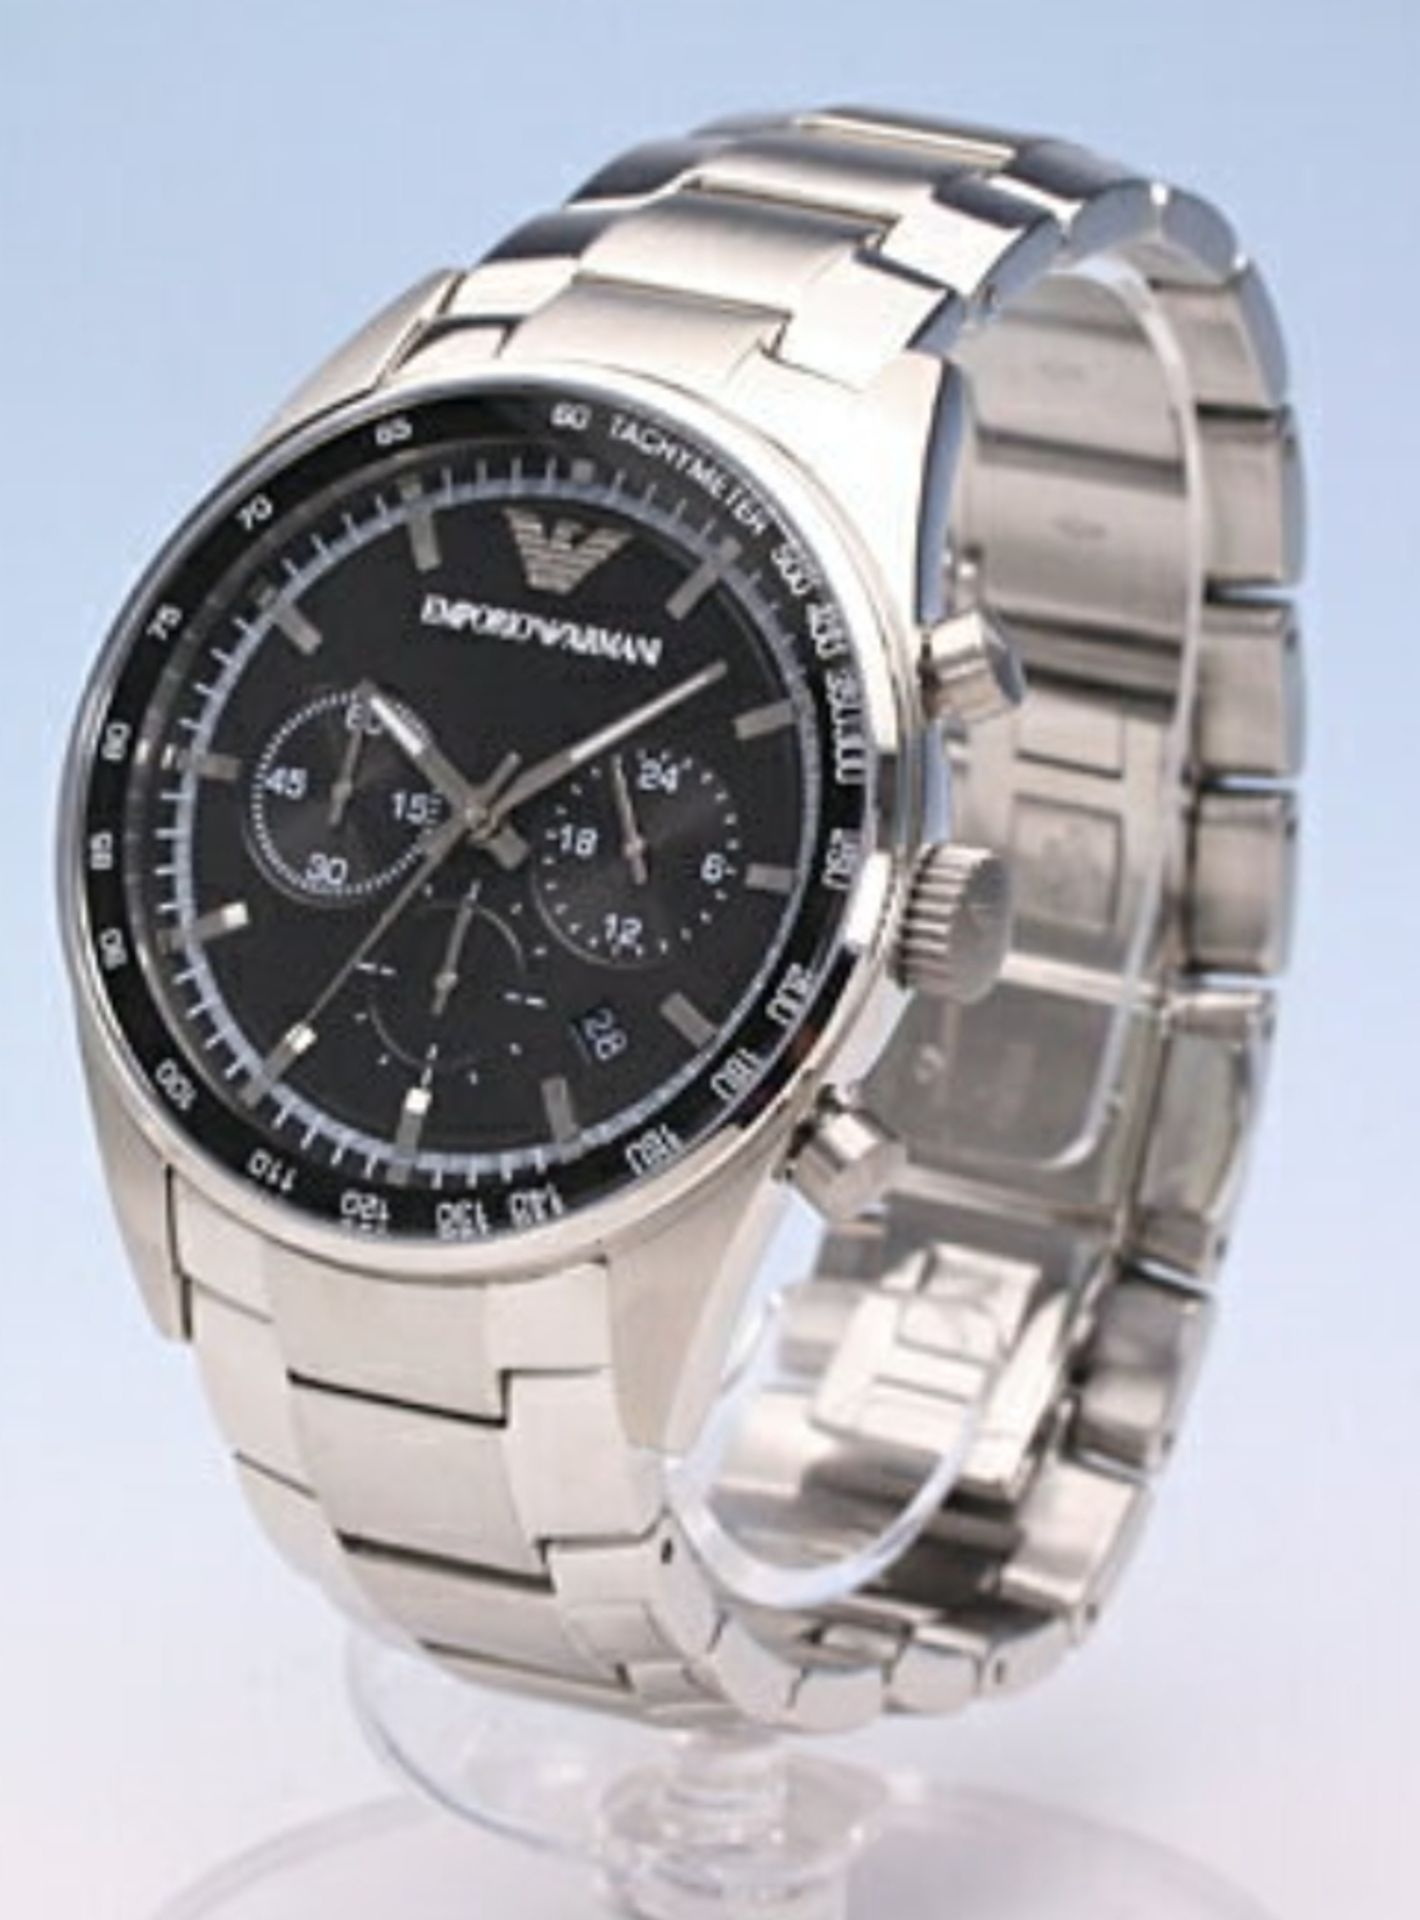 Emporio Armani AR5980 Men's Sportivo Black Dial Silver Bracelet Quartz Chronograph Watch - Image 7 of 8